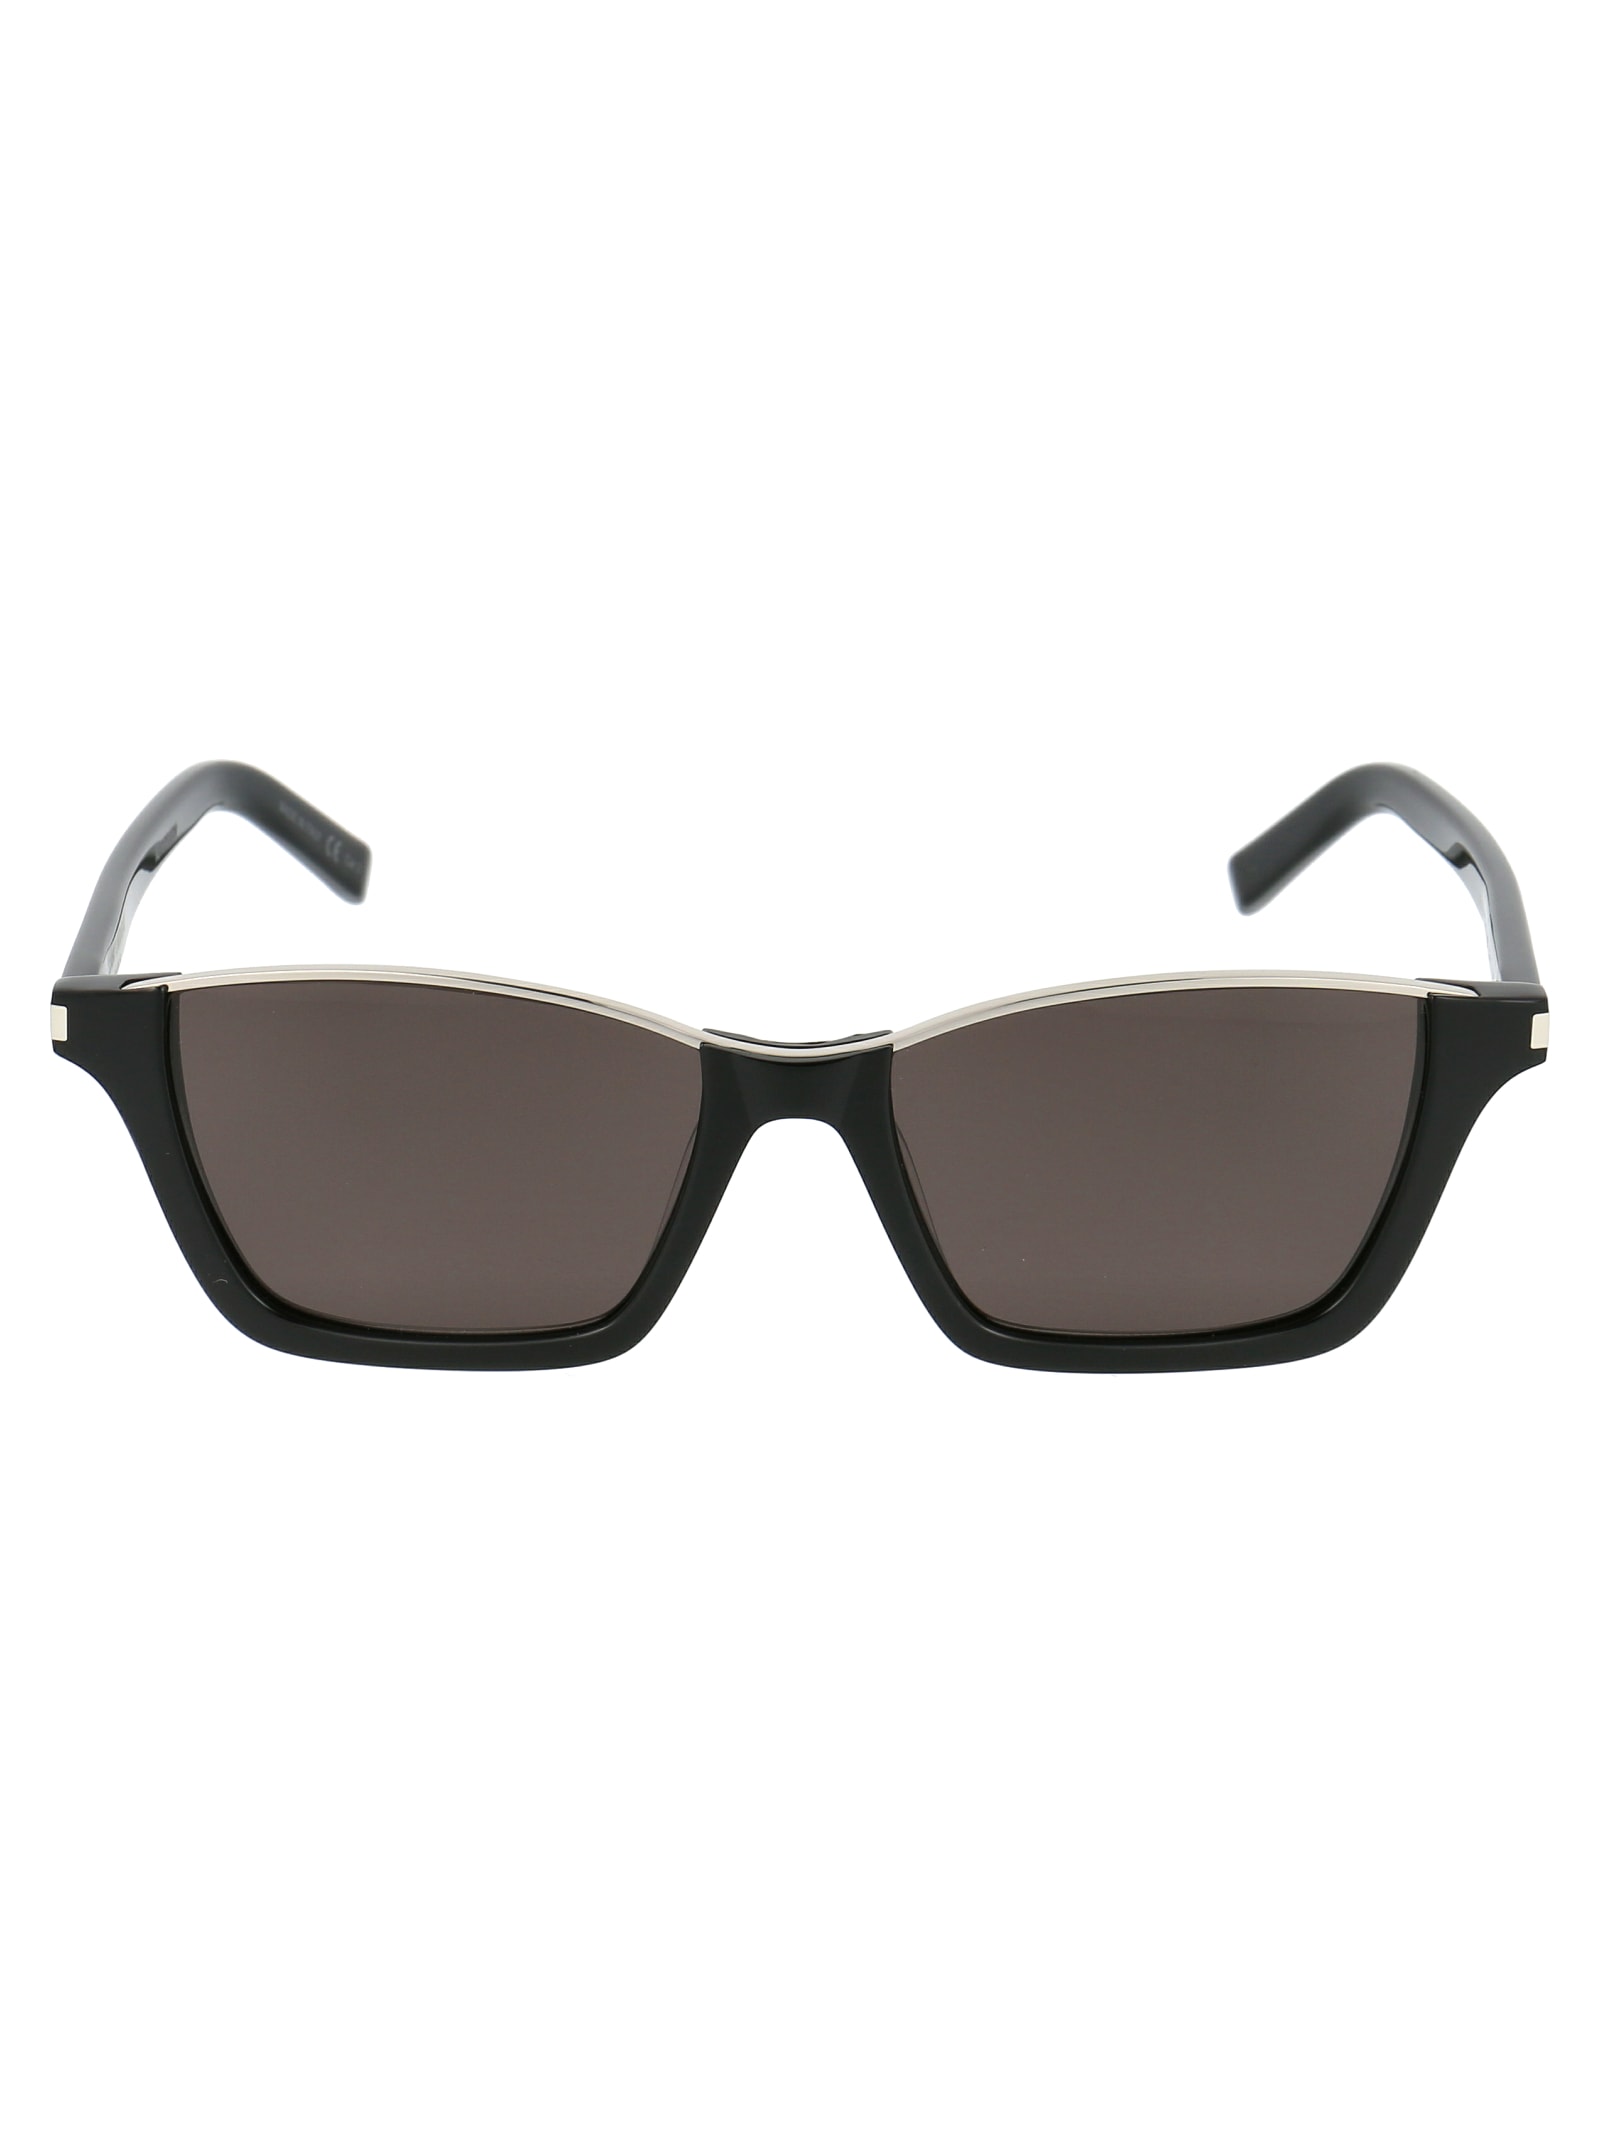 Saint Laurent Sunglasses In 002 Black Black Black